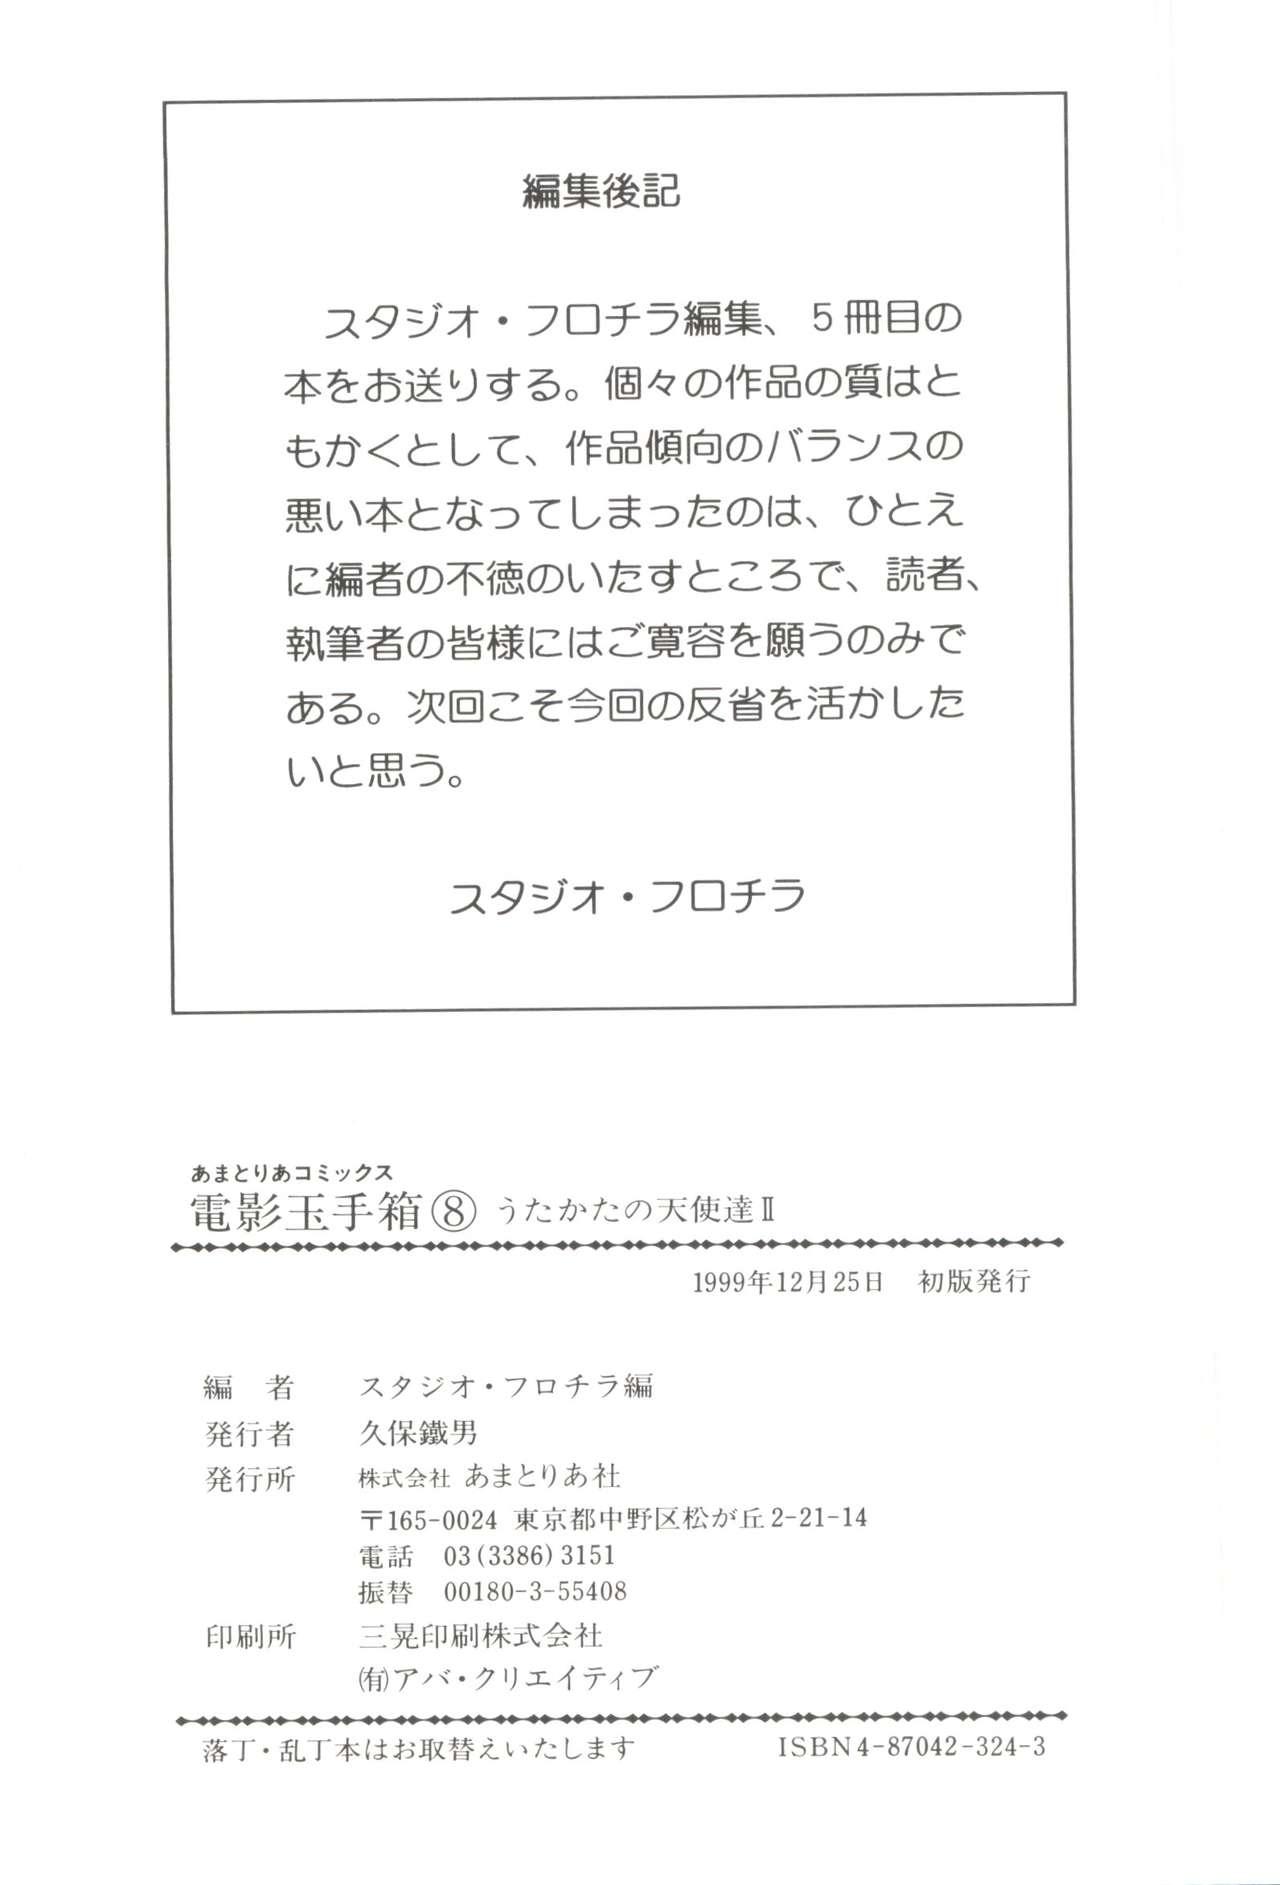 Mmf [Anthology] Denei Tamatebako 8 - Utakata no Tenshi-tachi II (Various) - Cardcaptor sakura Pretty sammy Digimon adventure Fun fun pharmacy Cei - Page 146